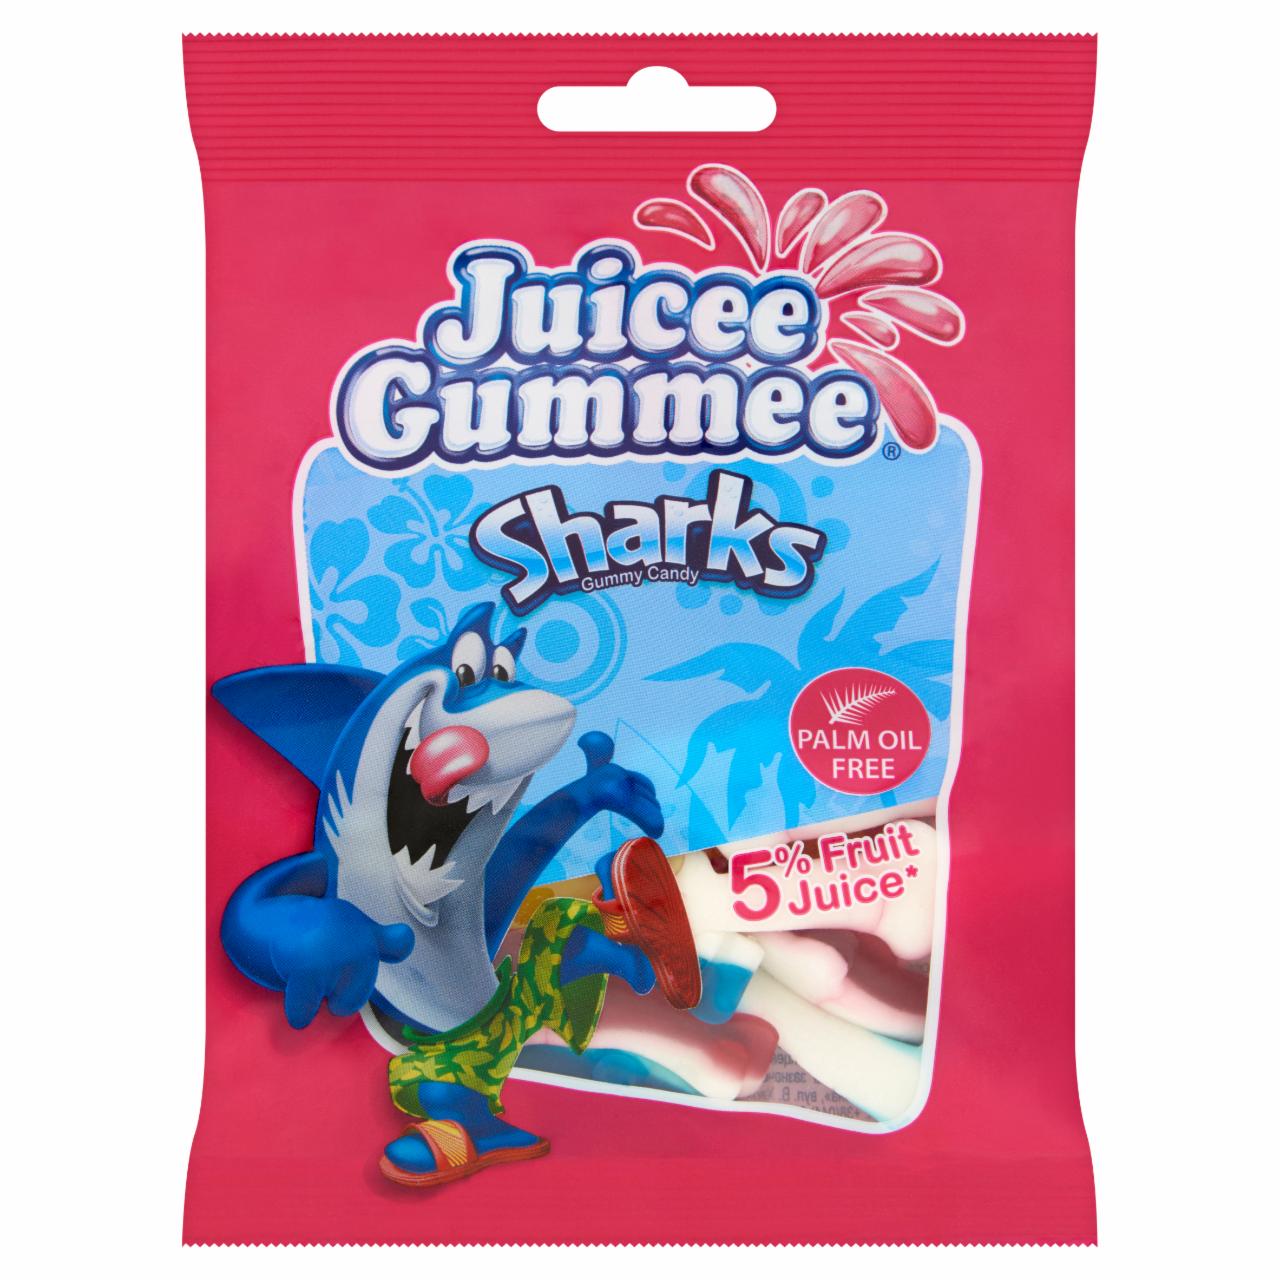 Képek - Juicee Gummee Sharks gyümölcsös ízű gumicukor 80 g